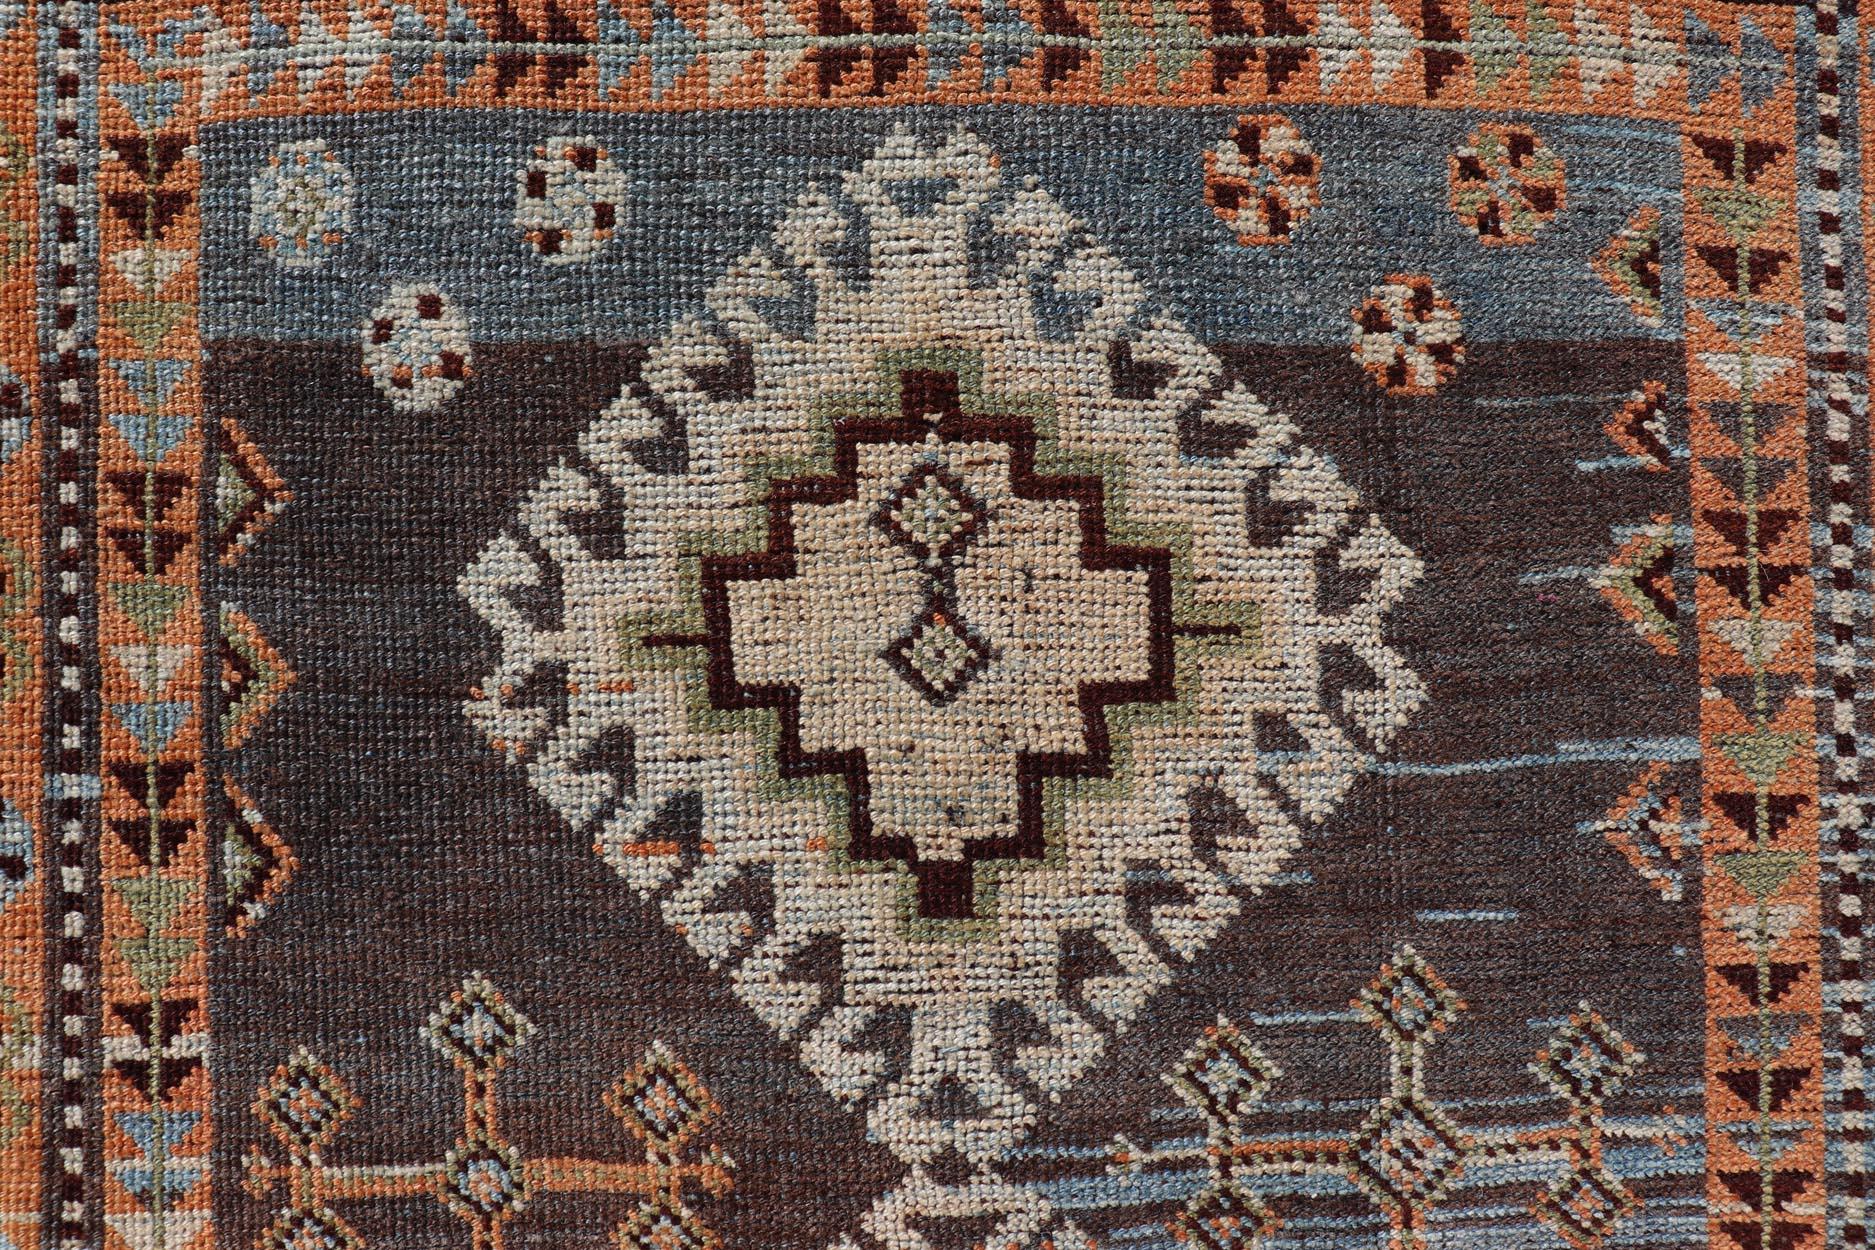 Mesures : 4'5 x 8'8 
Ancien tapis persan Lori à motifs de médaillons géométriques tribaux. Keivan Woven Arts / tapis EMB-22156-15069, pays d'origine / type : Iran / lori, circa 1900

Ce magnifique petit tapis ancien du début du 20e siècle de la